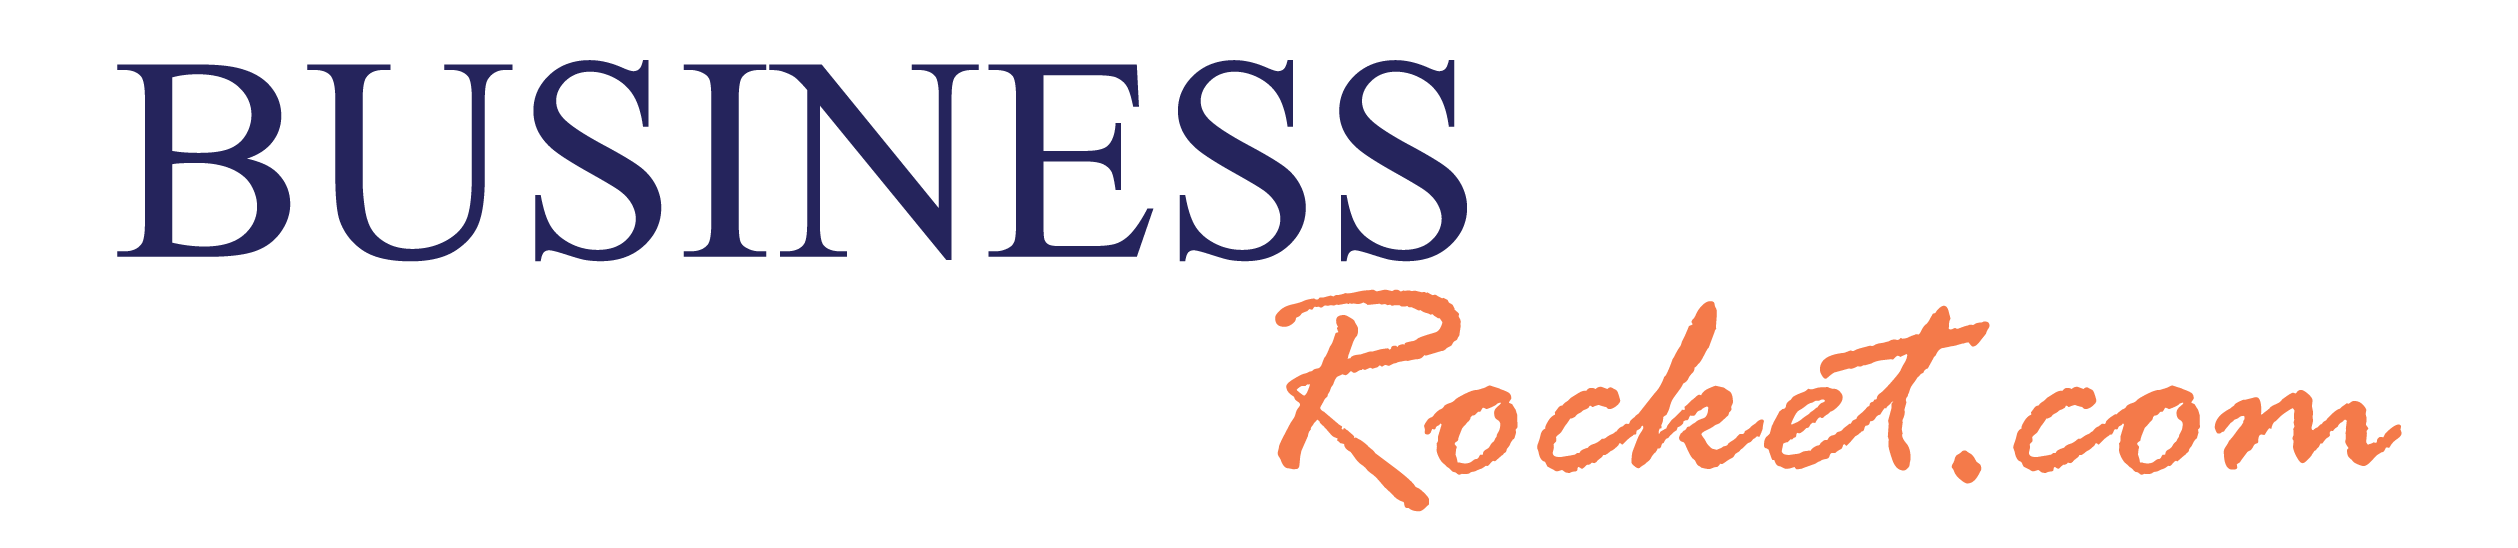 BusinessRocket-logo_2023.png